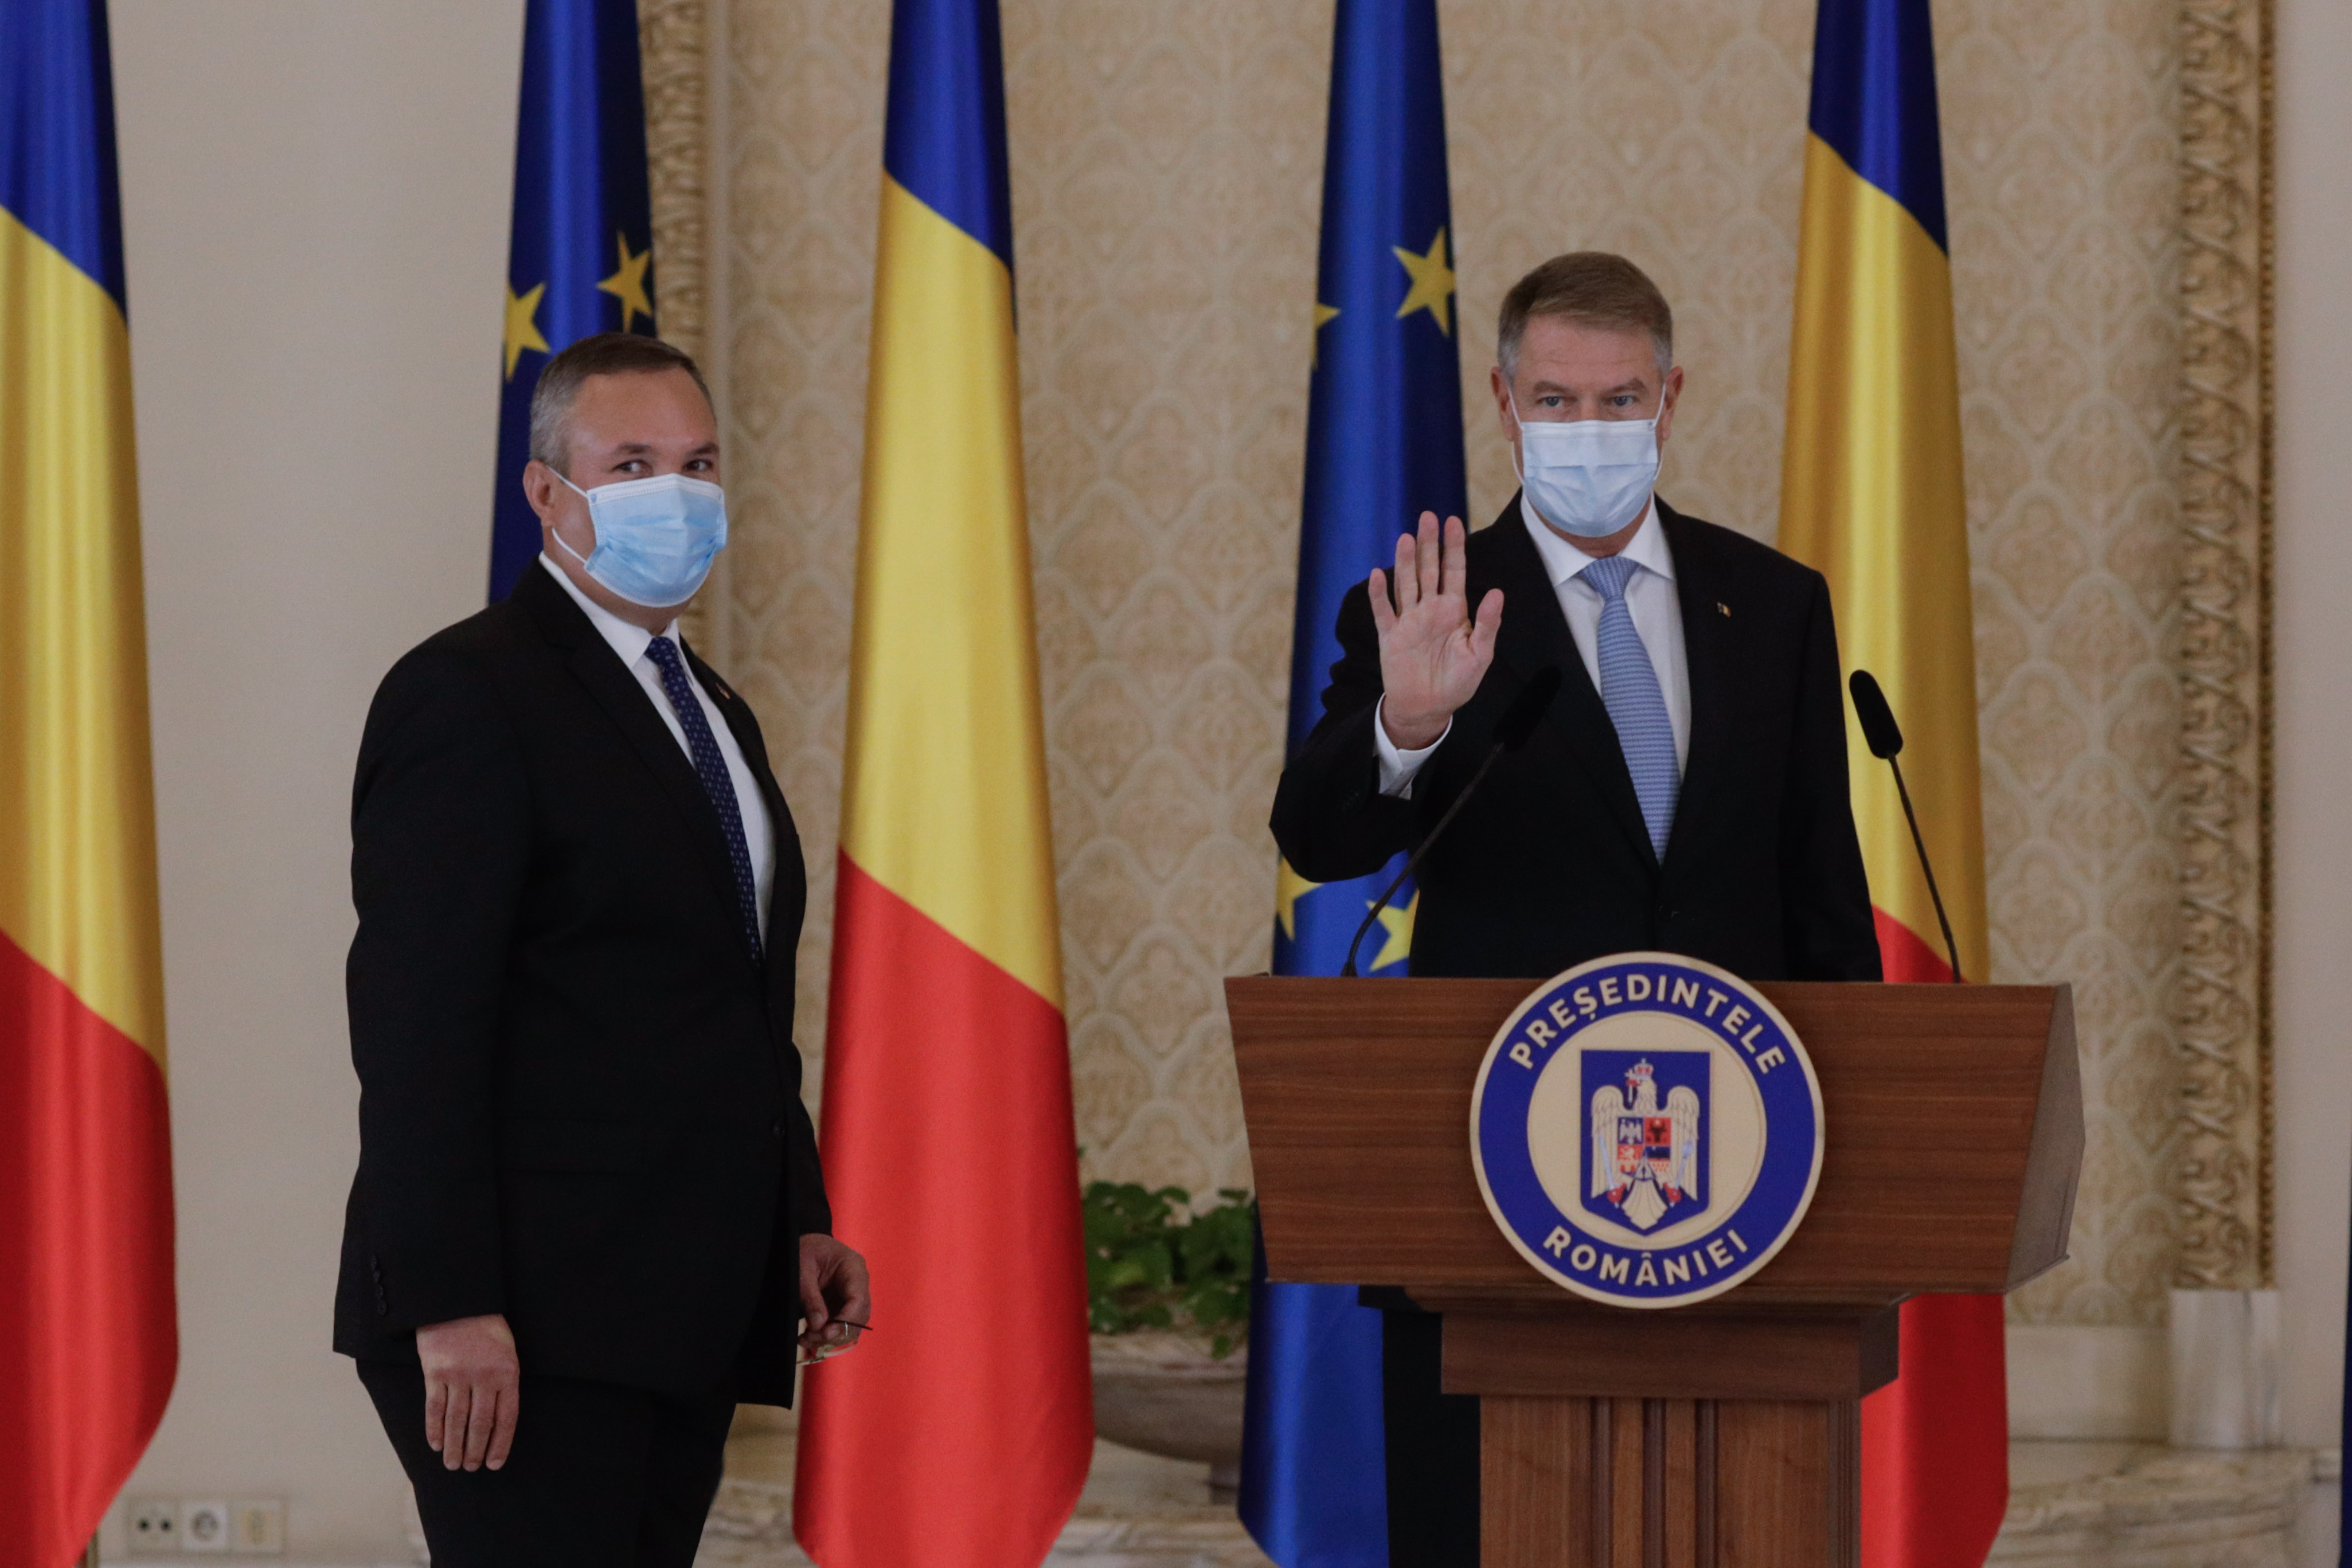 Președintele Klaus Iohannis l-a desemnat premier pe Nicolae Ciucă în Guvernul PSD-PNL-UDMR